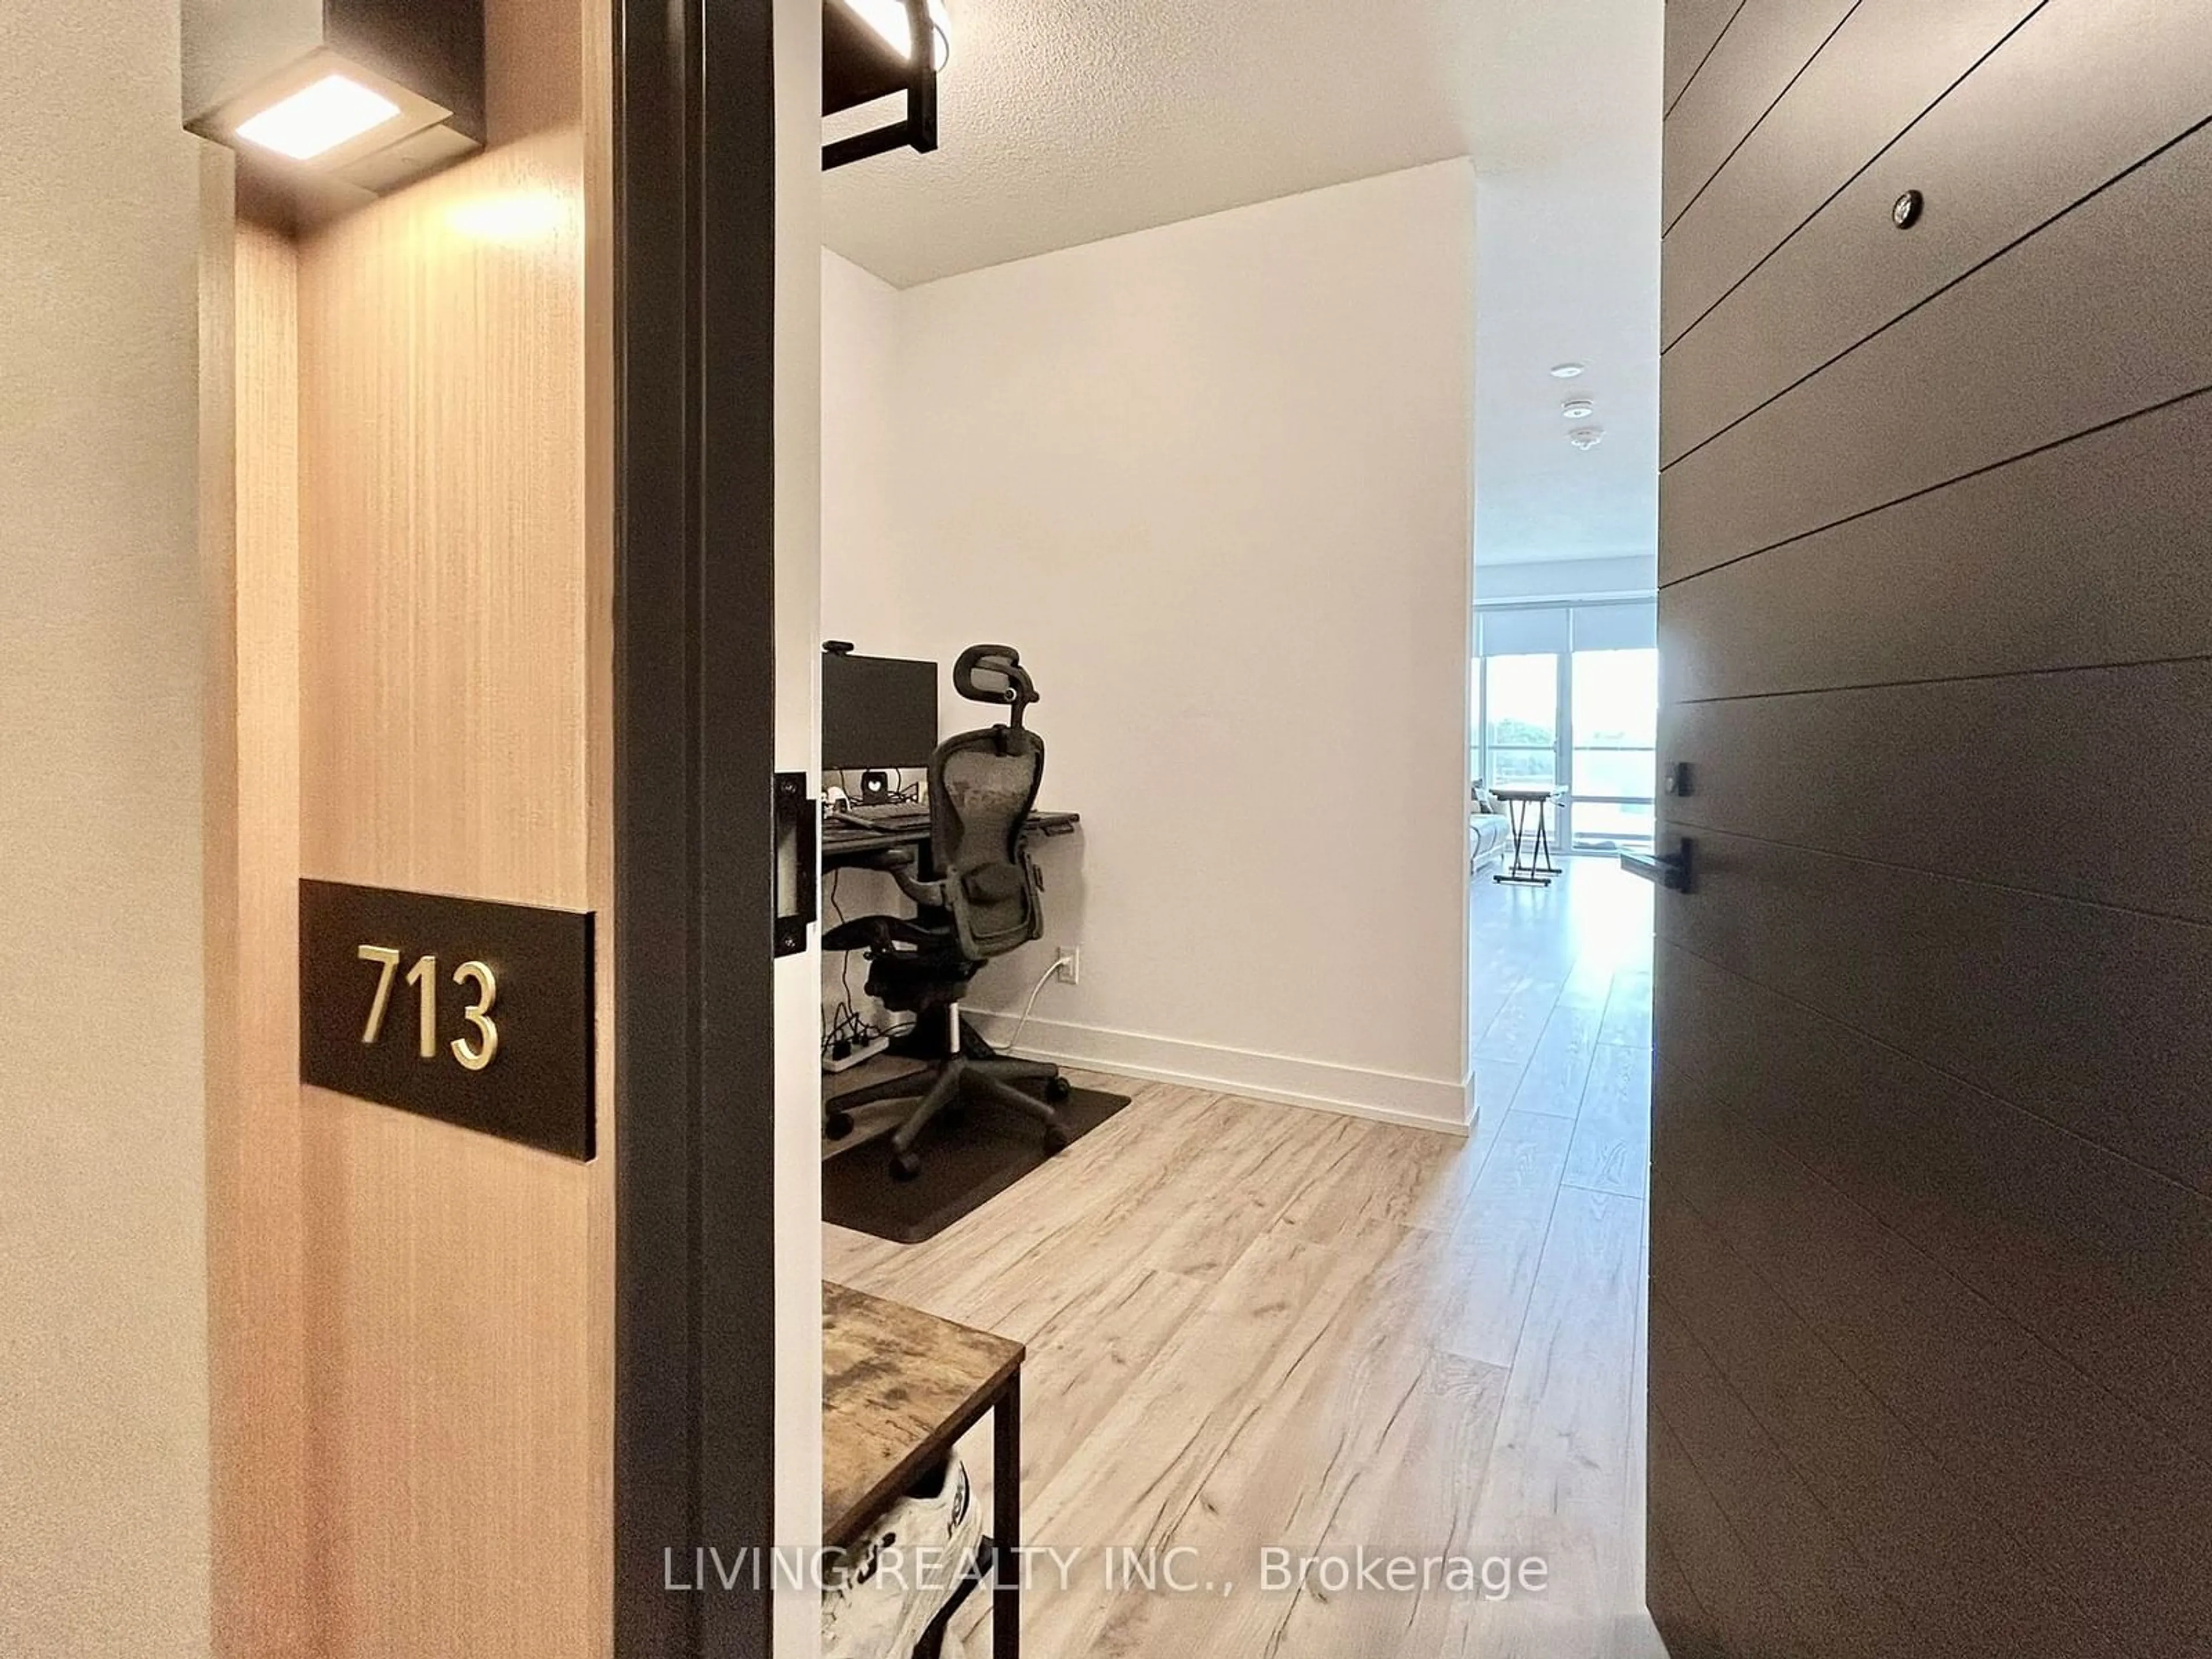 Indoor entryway for 25 Adra Grado Way #713, Toronto Ontario M2J 0H6